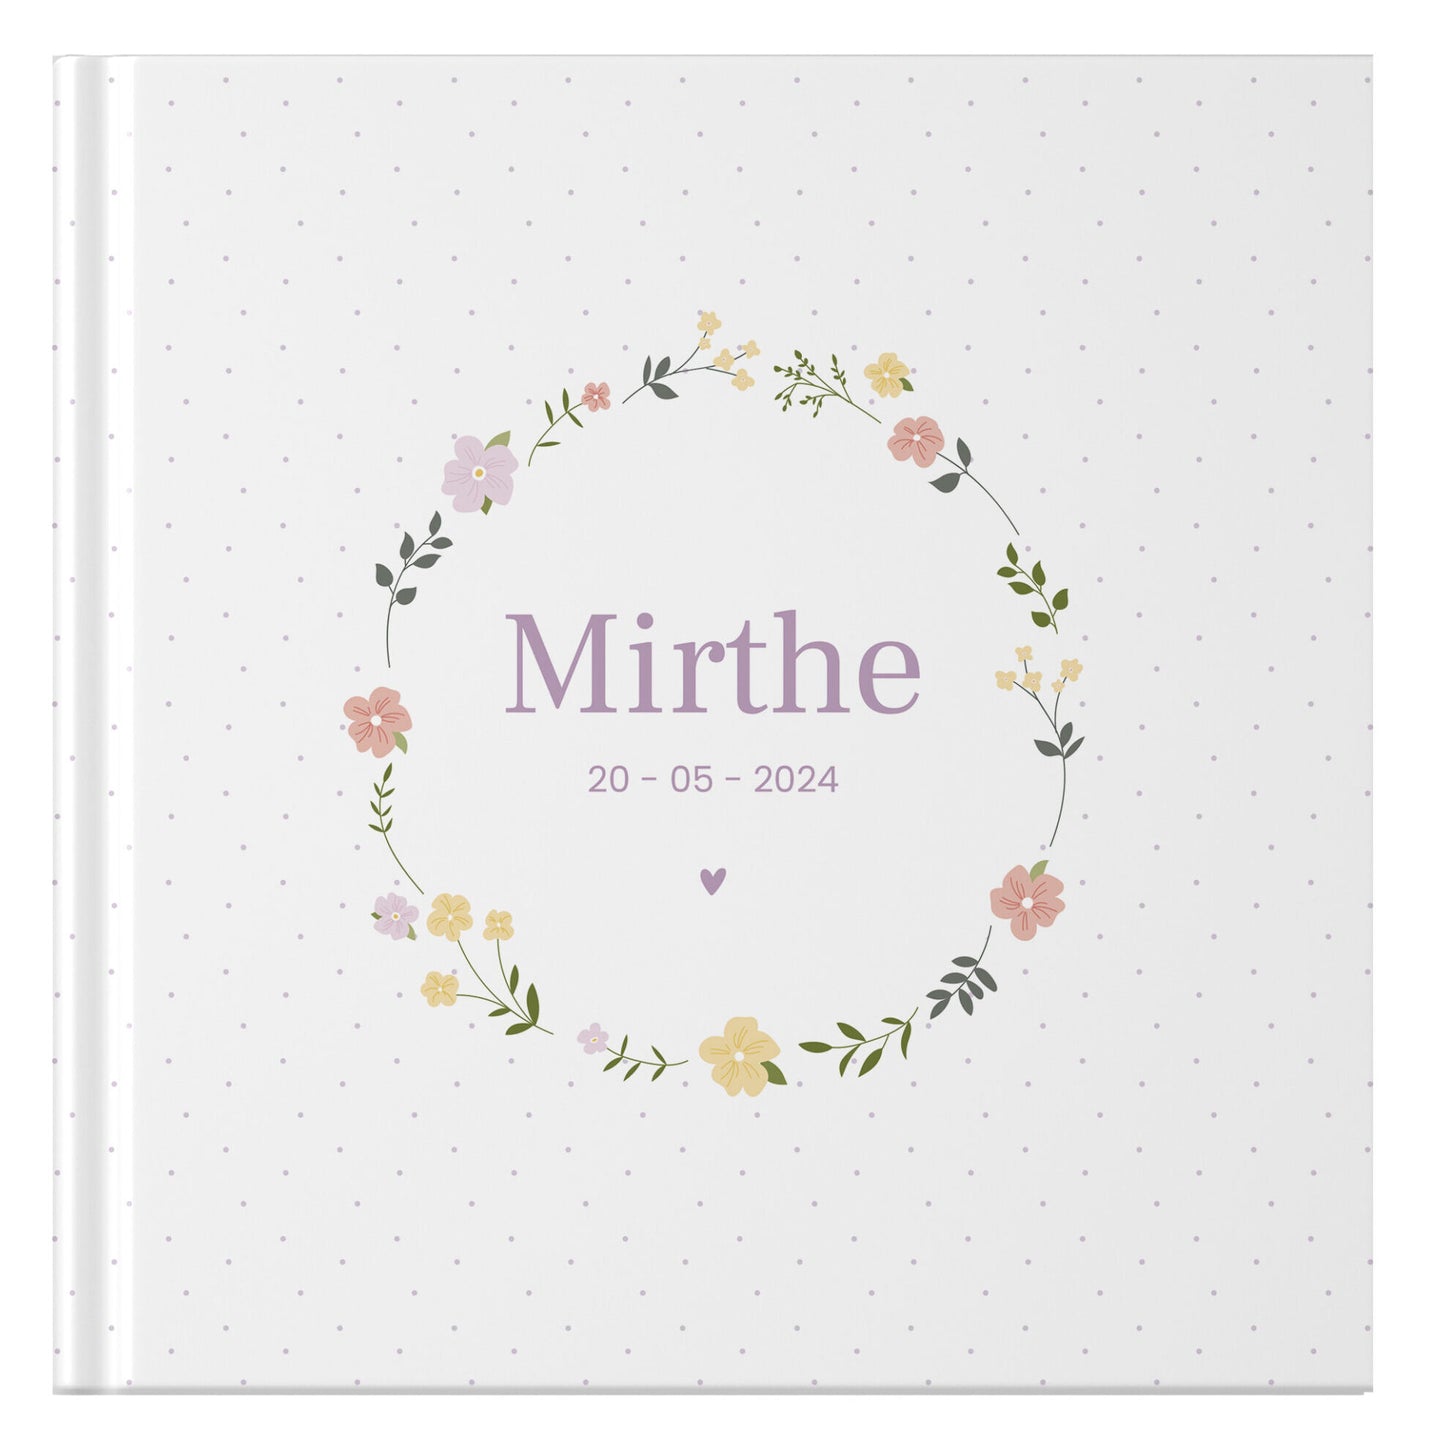 ontwerp je eigen babyboek - floral wreath dots